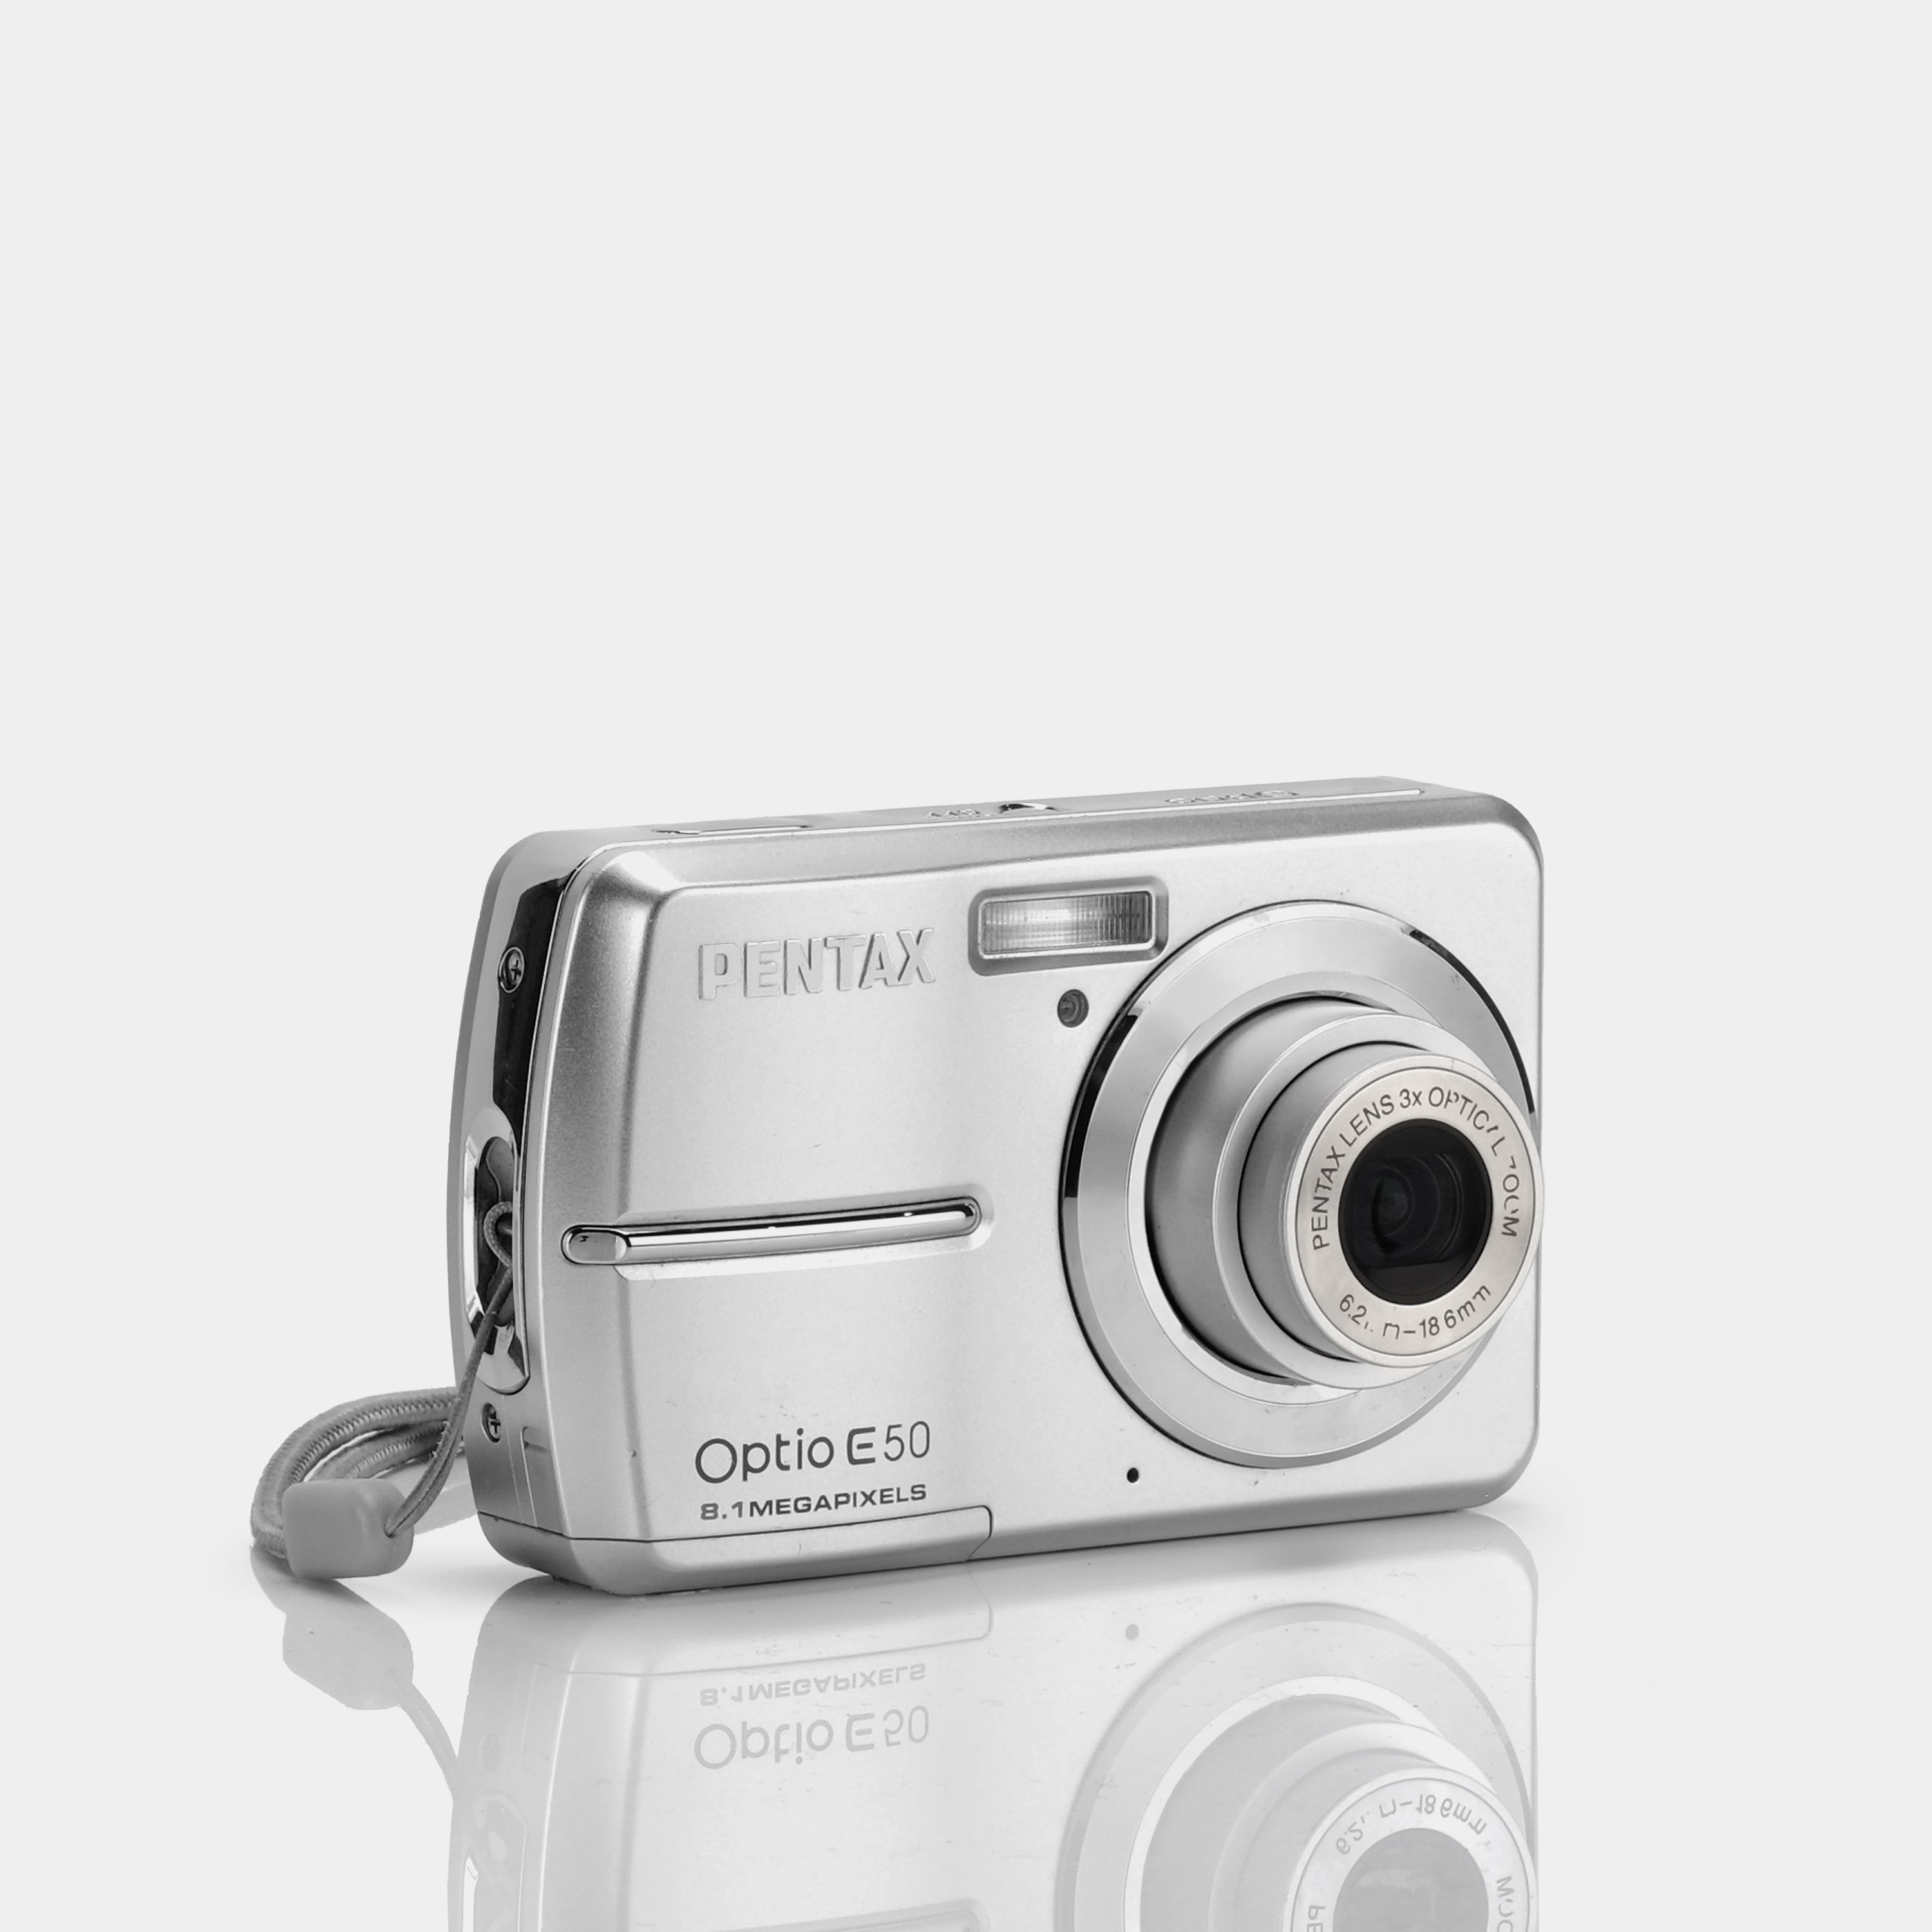 Pentax Optio E50 Point and Shoot Digital Camera